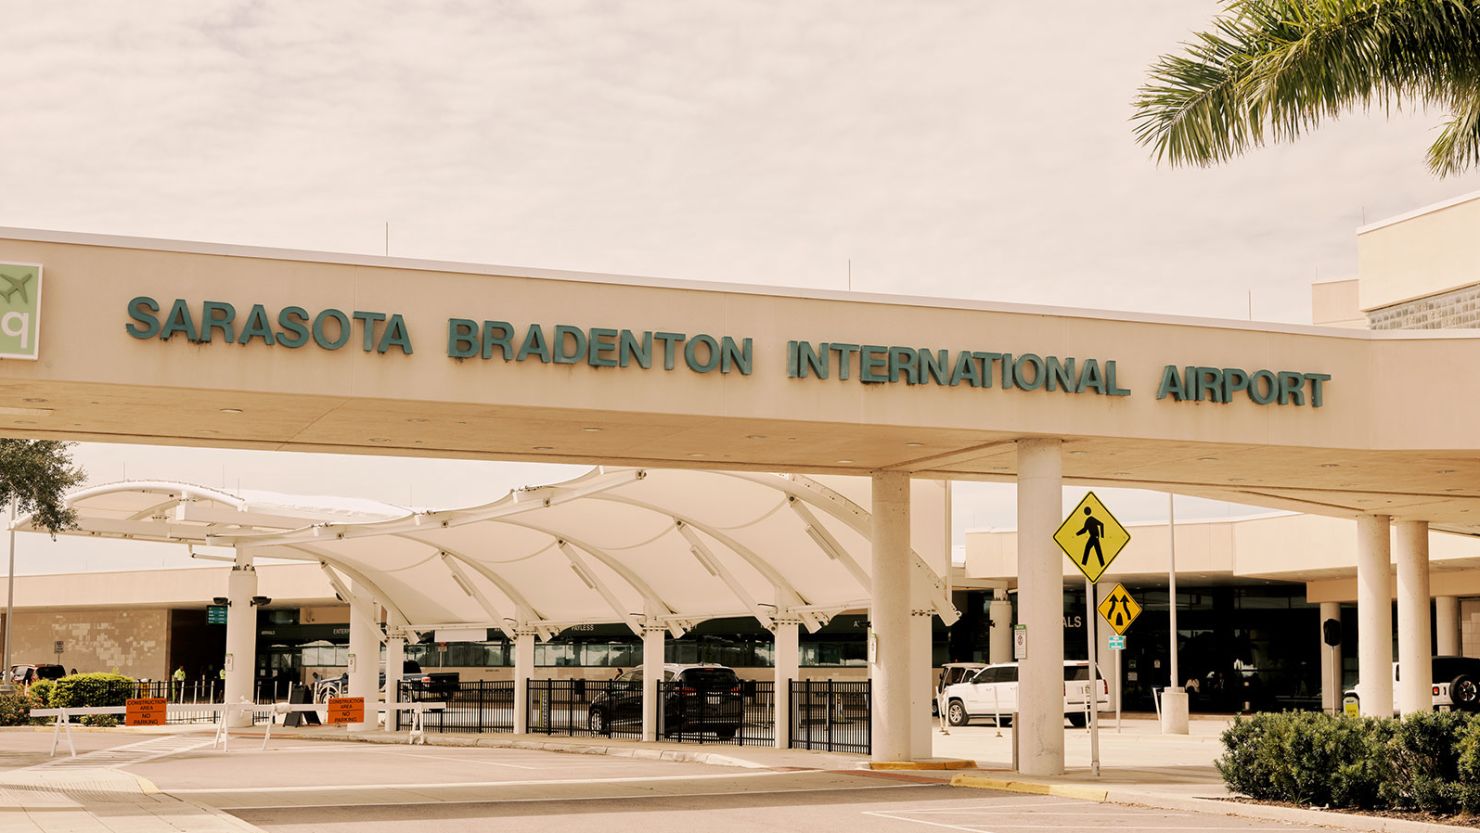 The Sarasota Bradenton International Airport in Sarasota, Florida. 